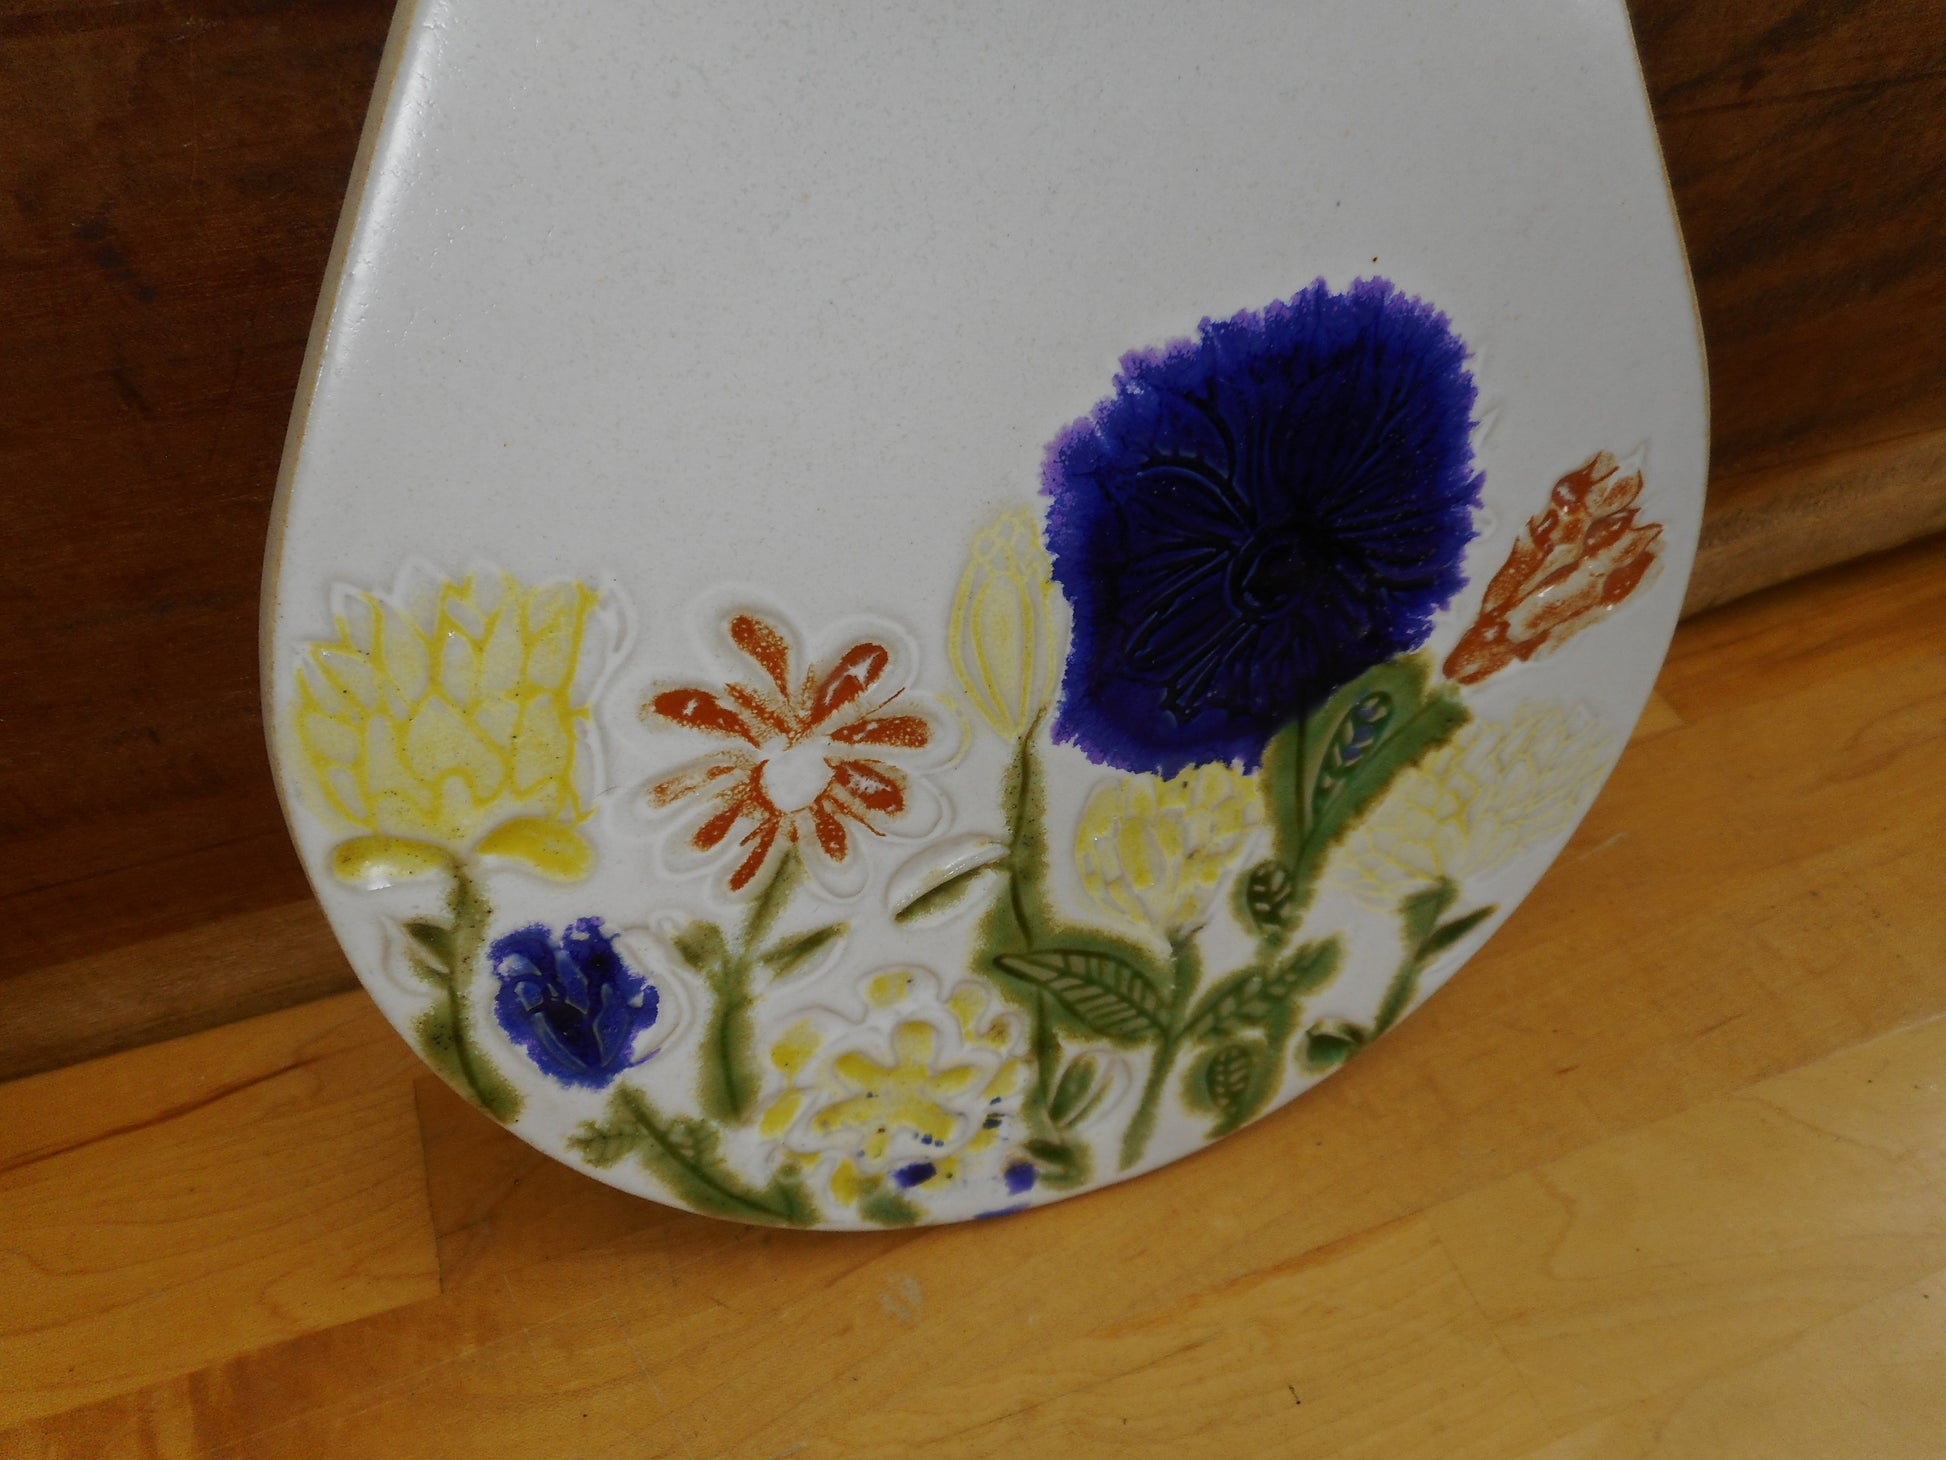 Bennington Potters Vermont 1561 Flower Tile Wall Art Plaque Vintage